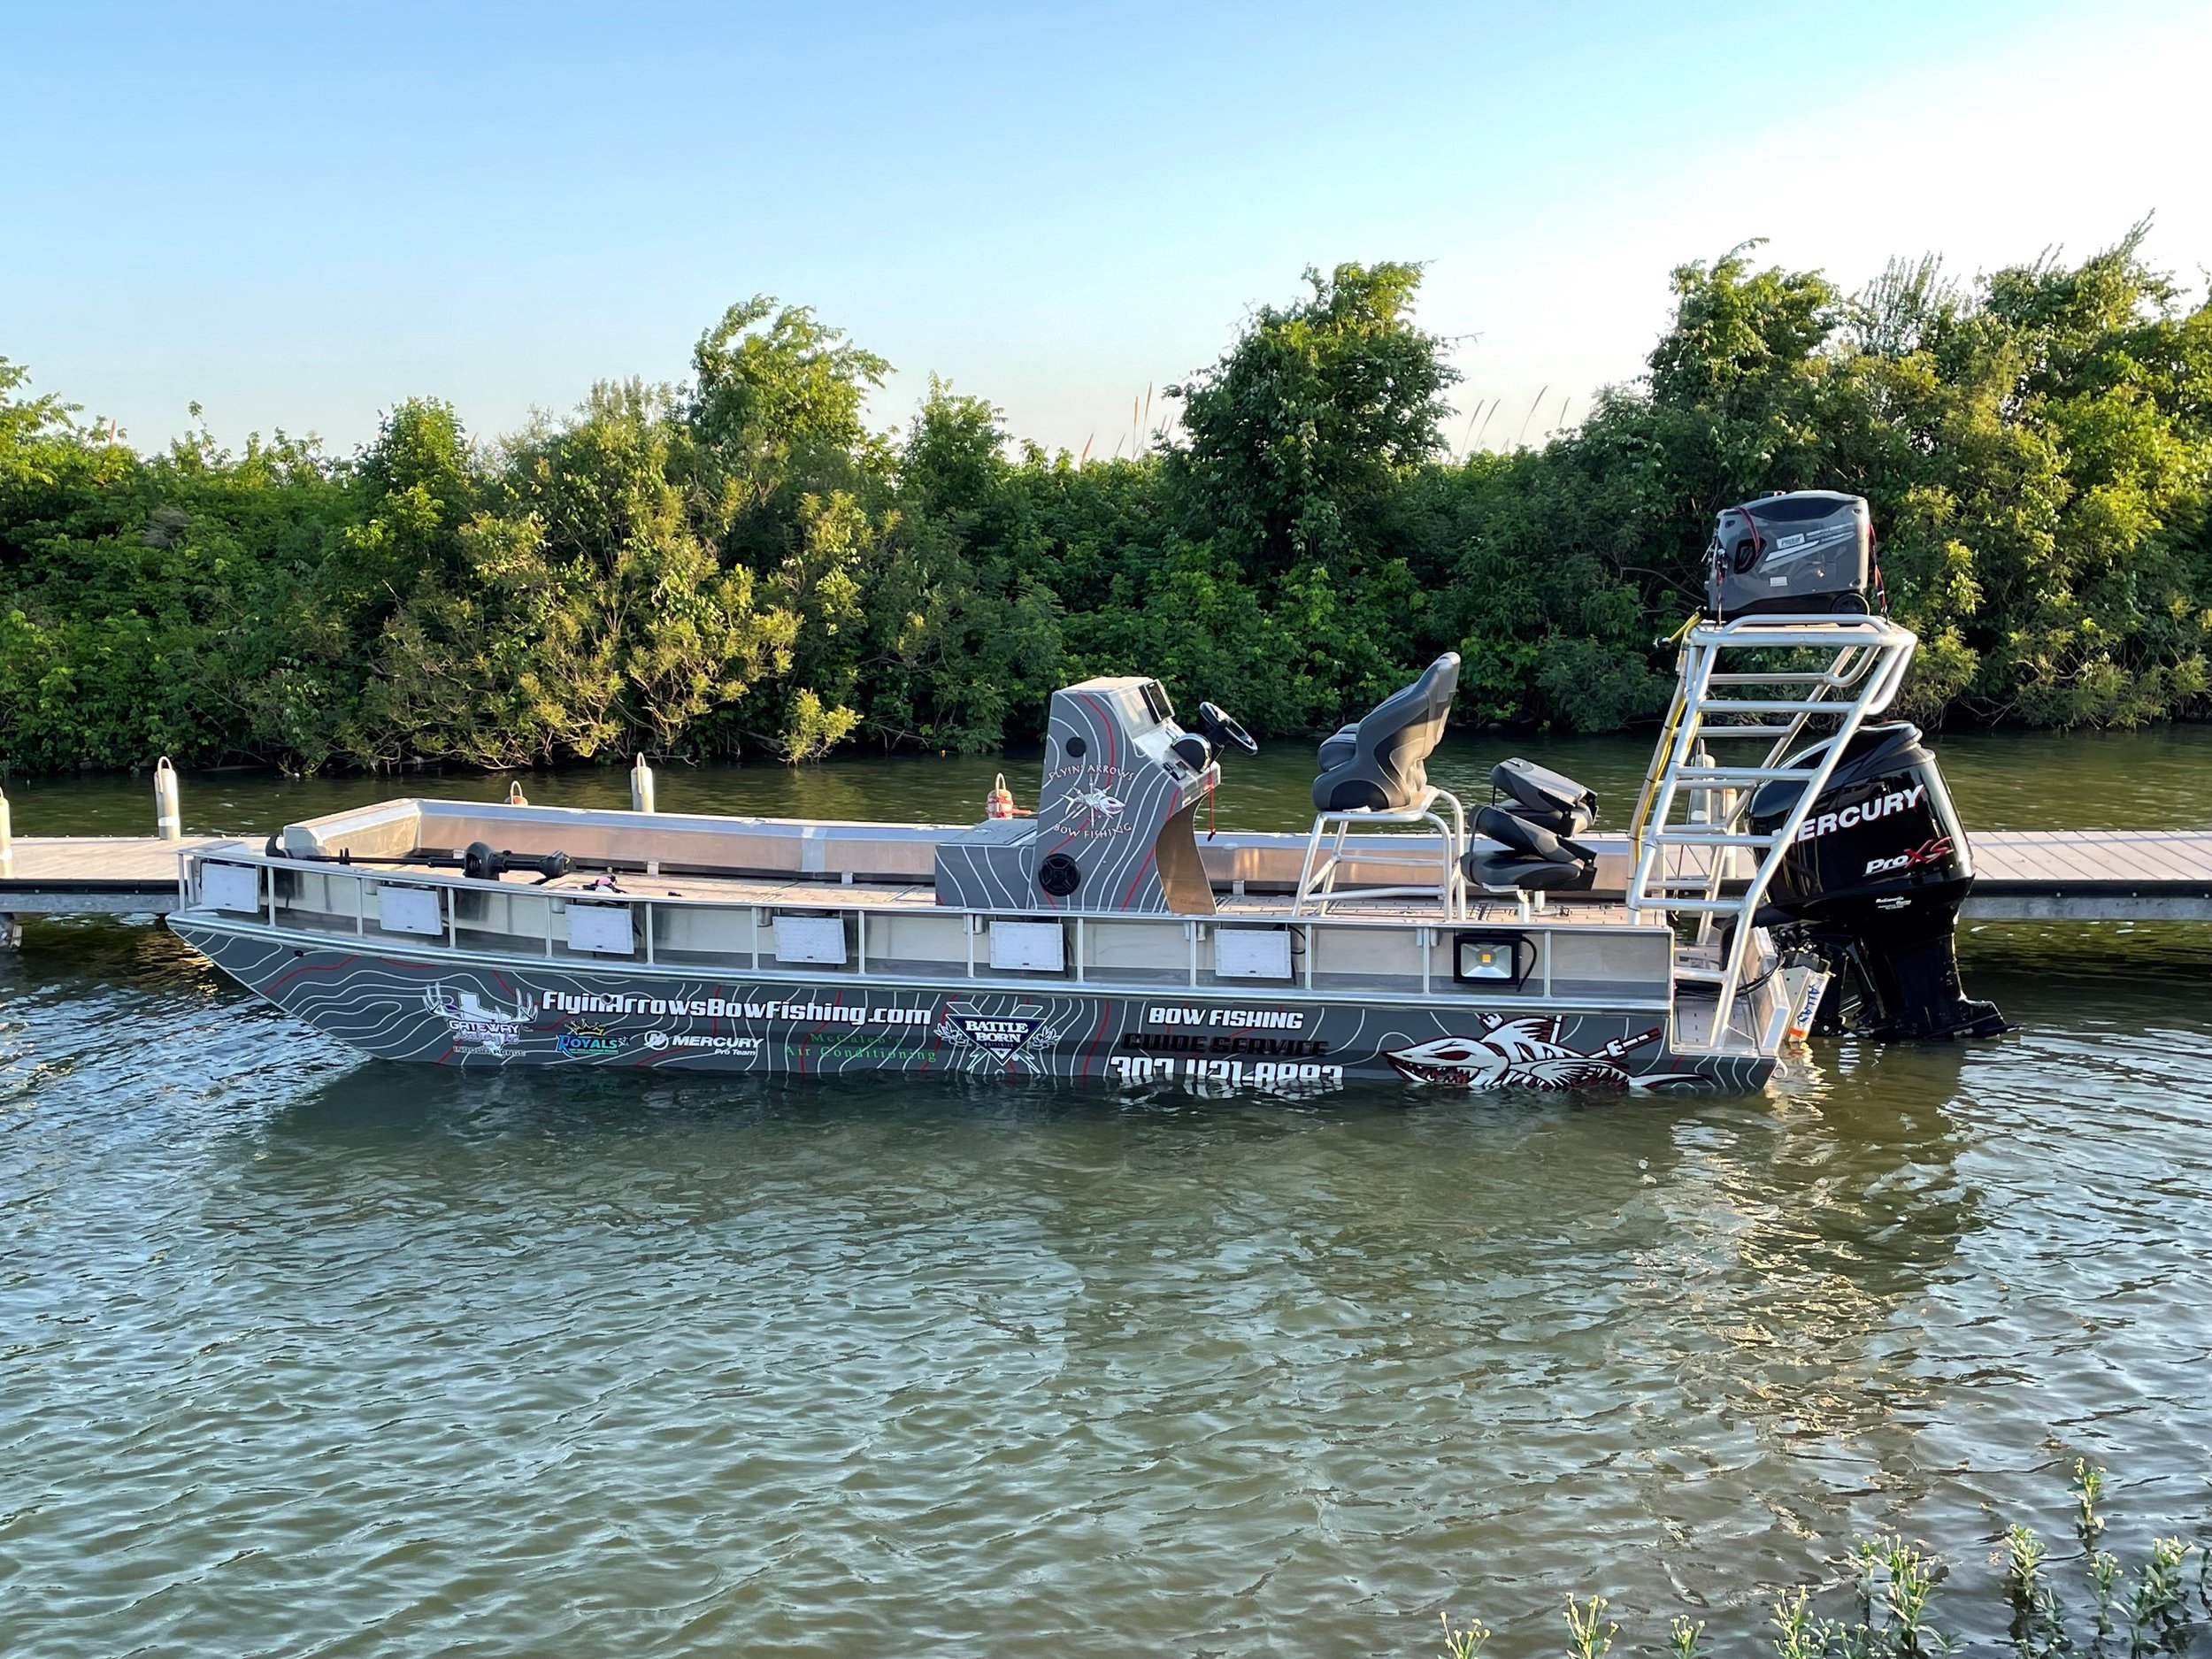 Lowe Bowfishing boat — Flyin' Arrows Bowfishing Granbury Texas bowfishing